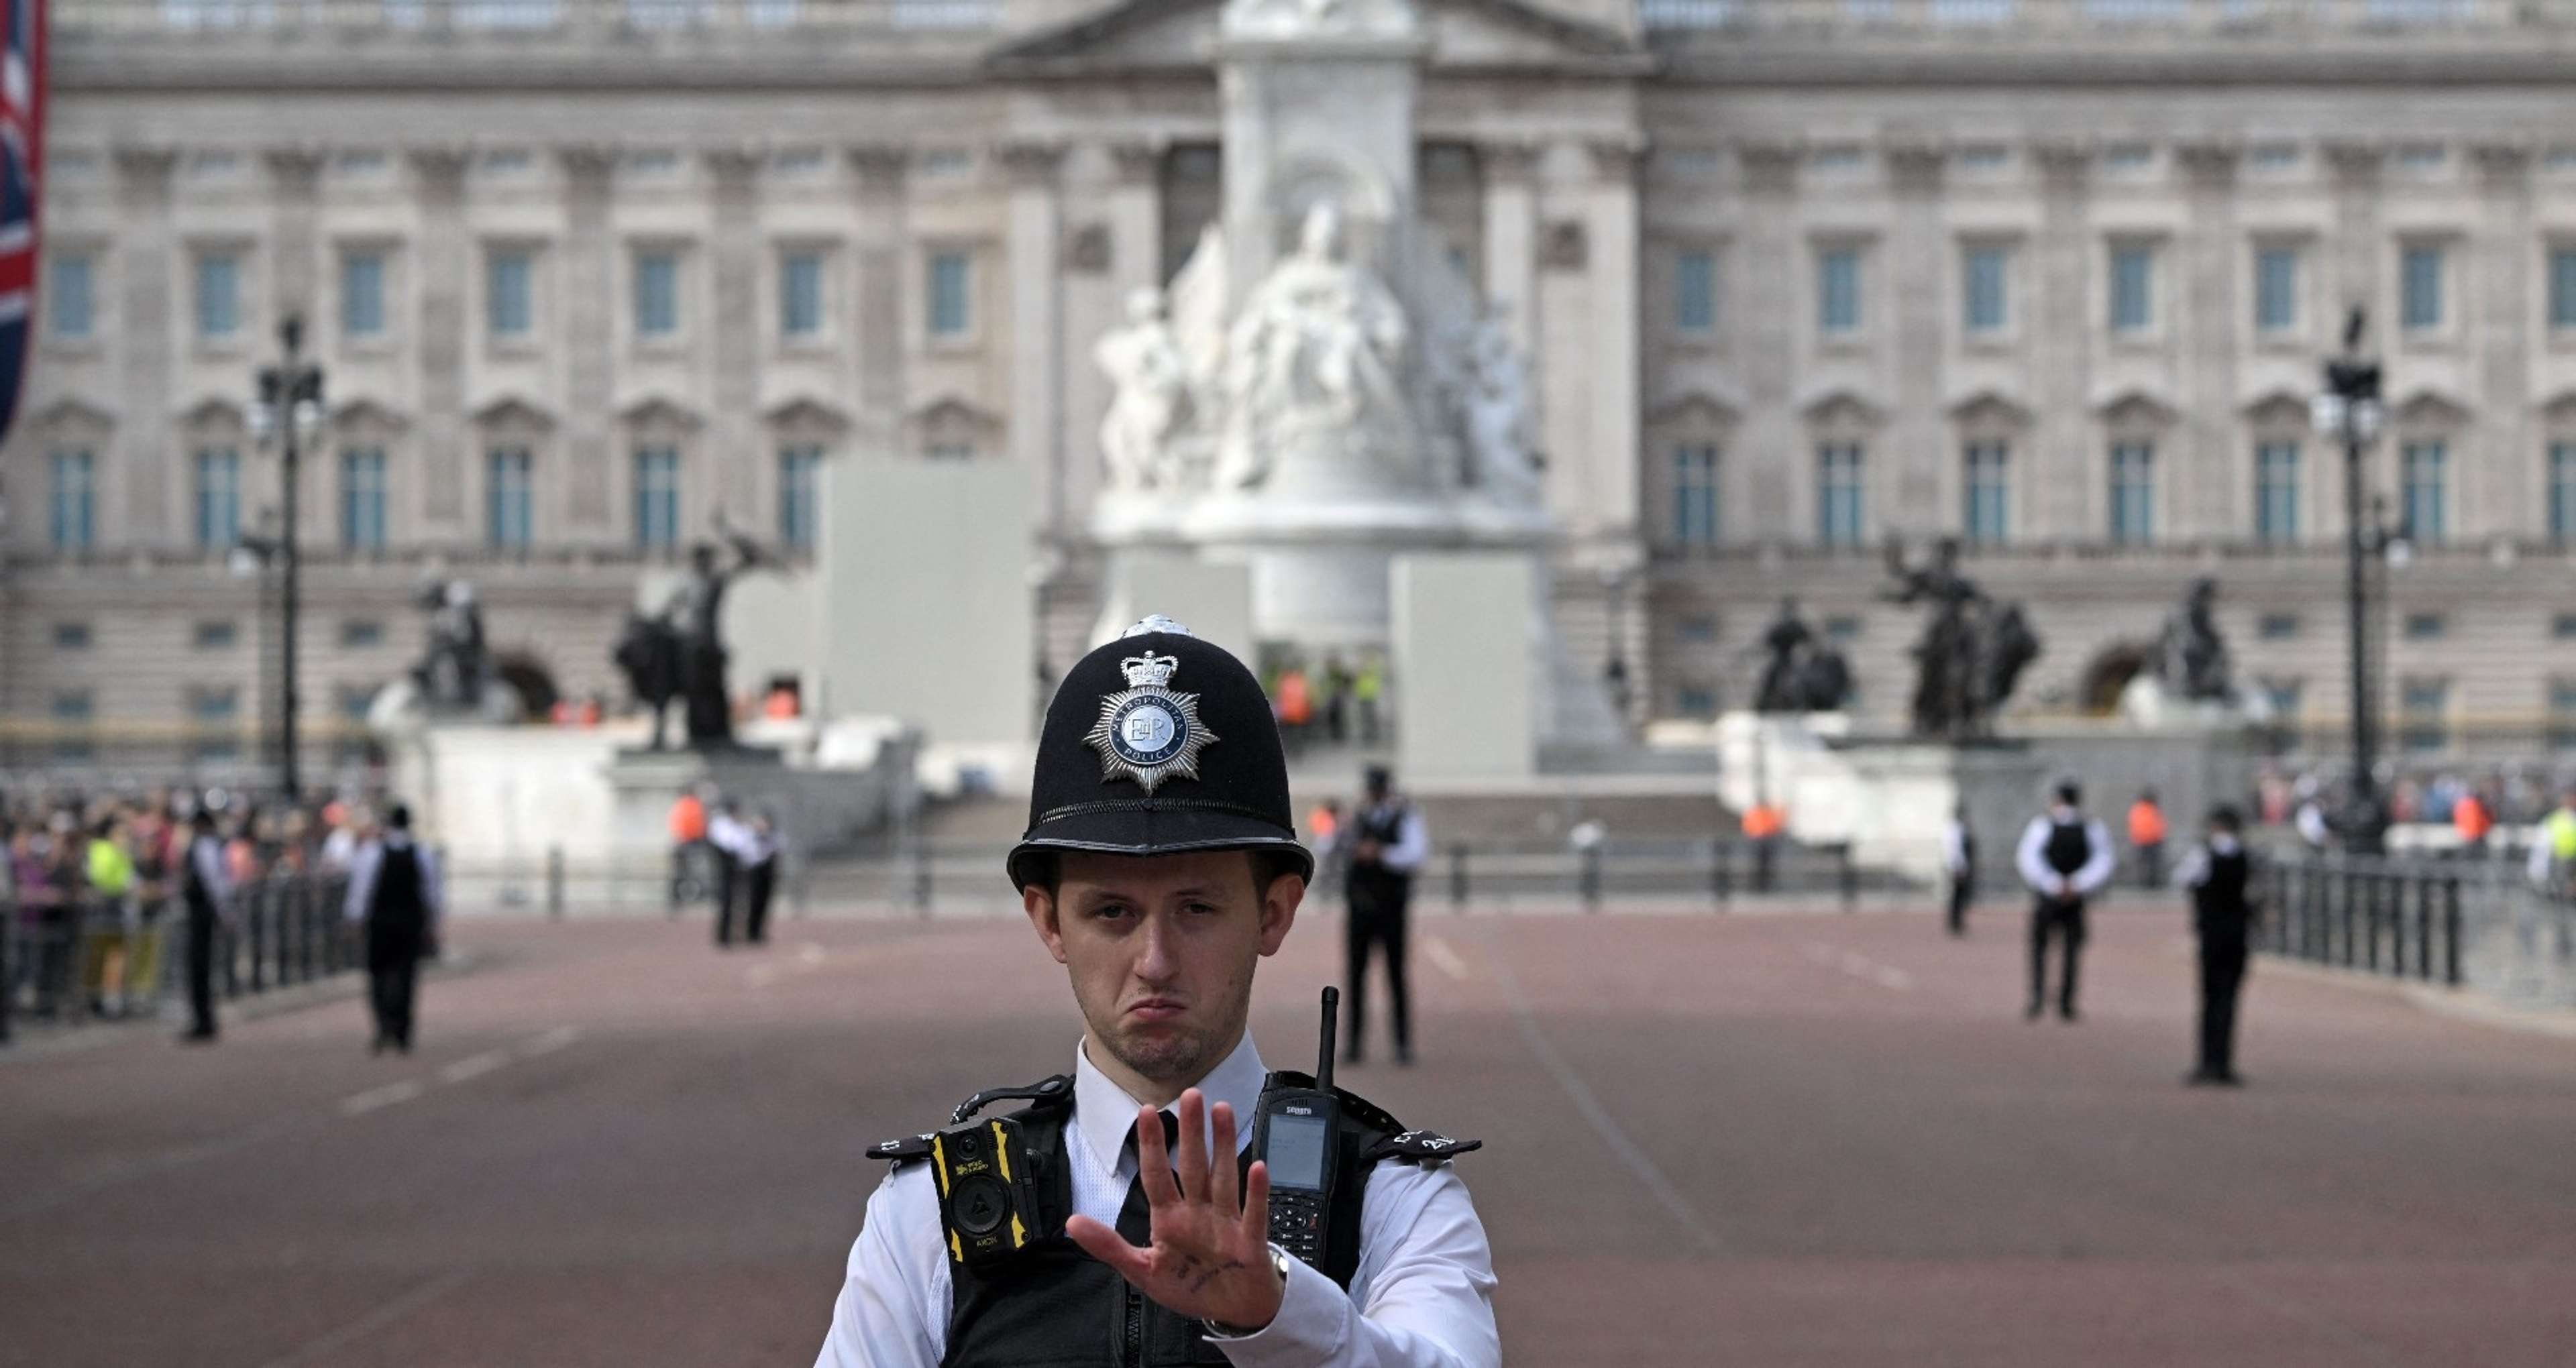 Police Buckingham Palace